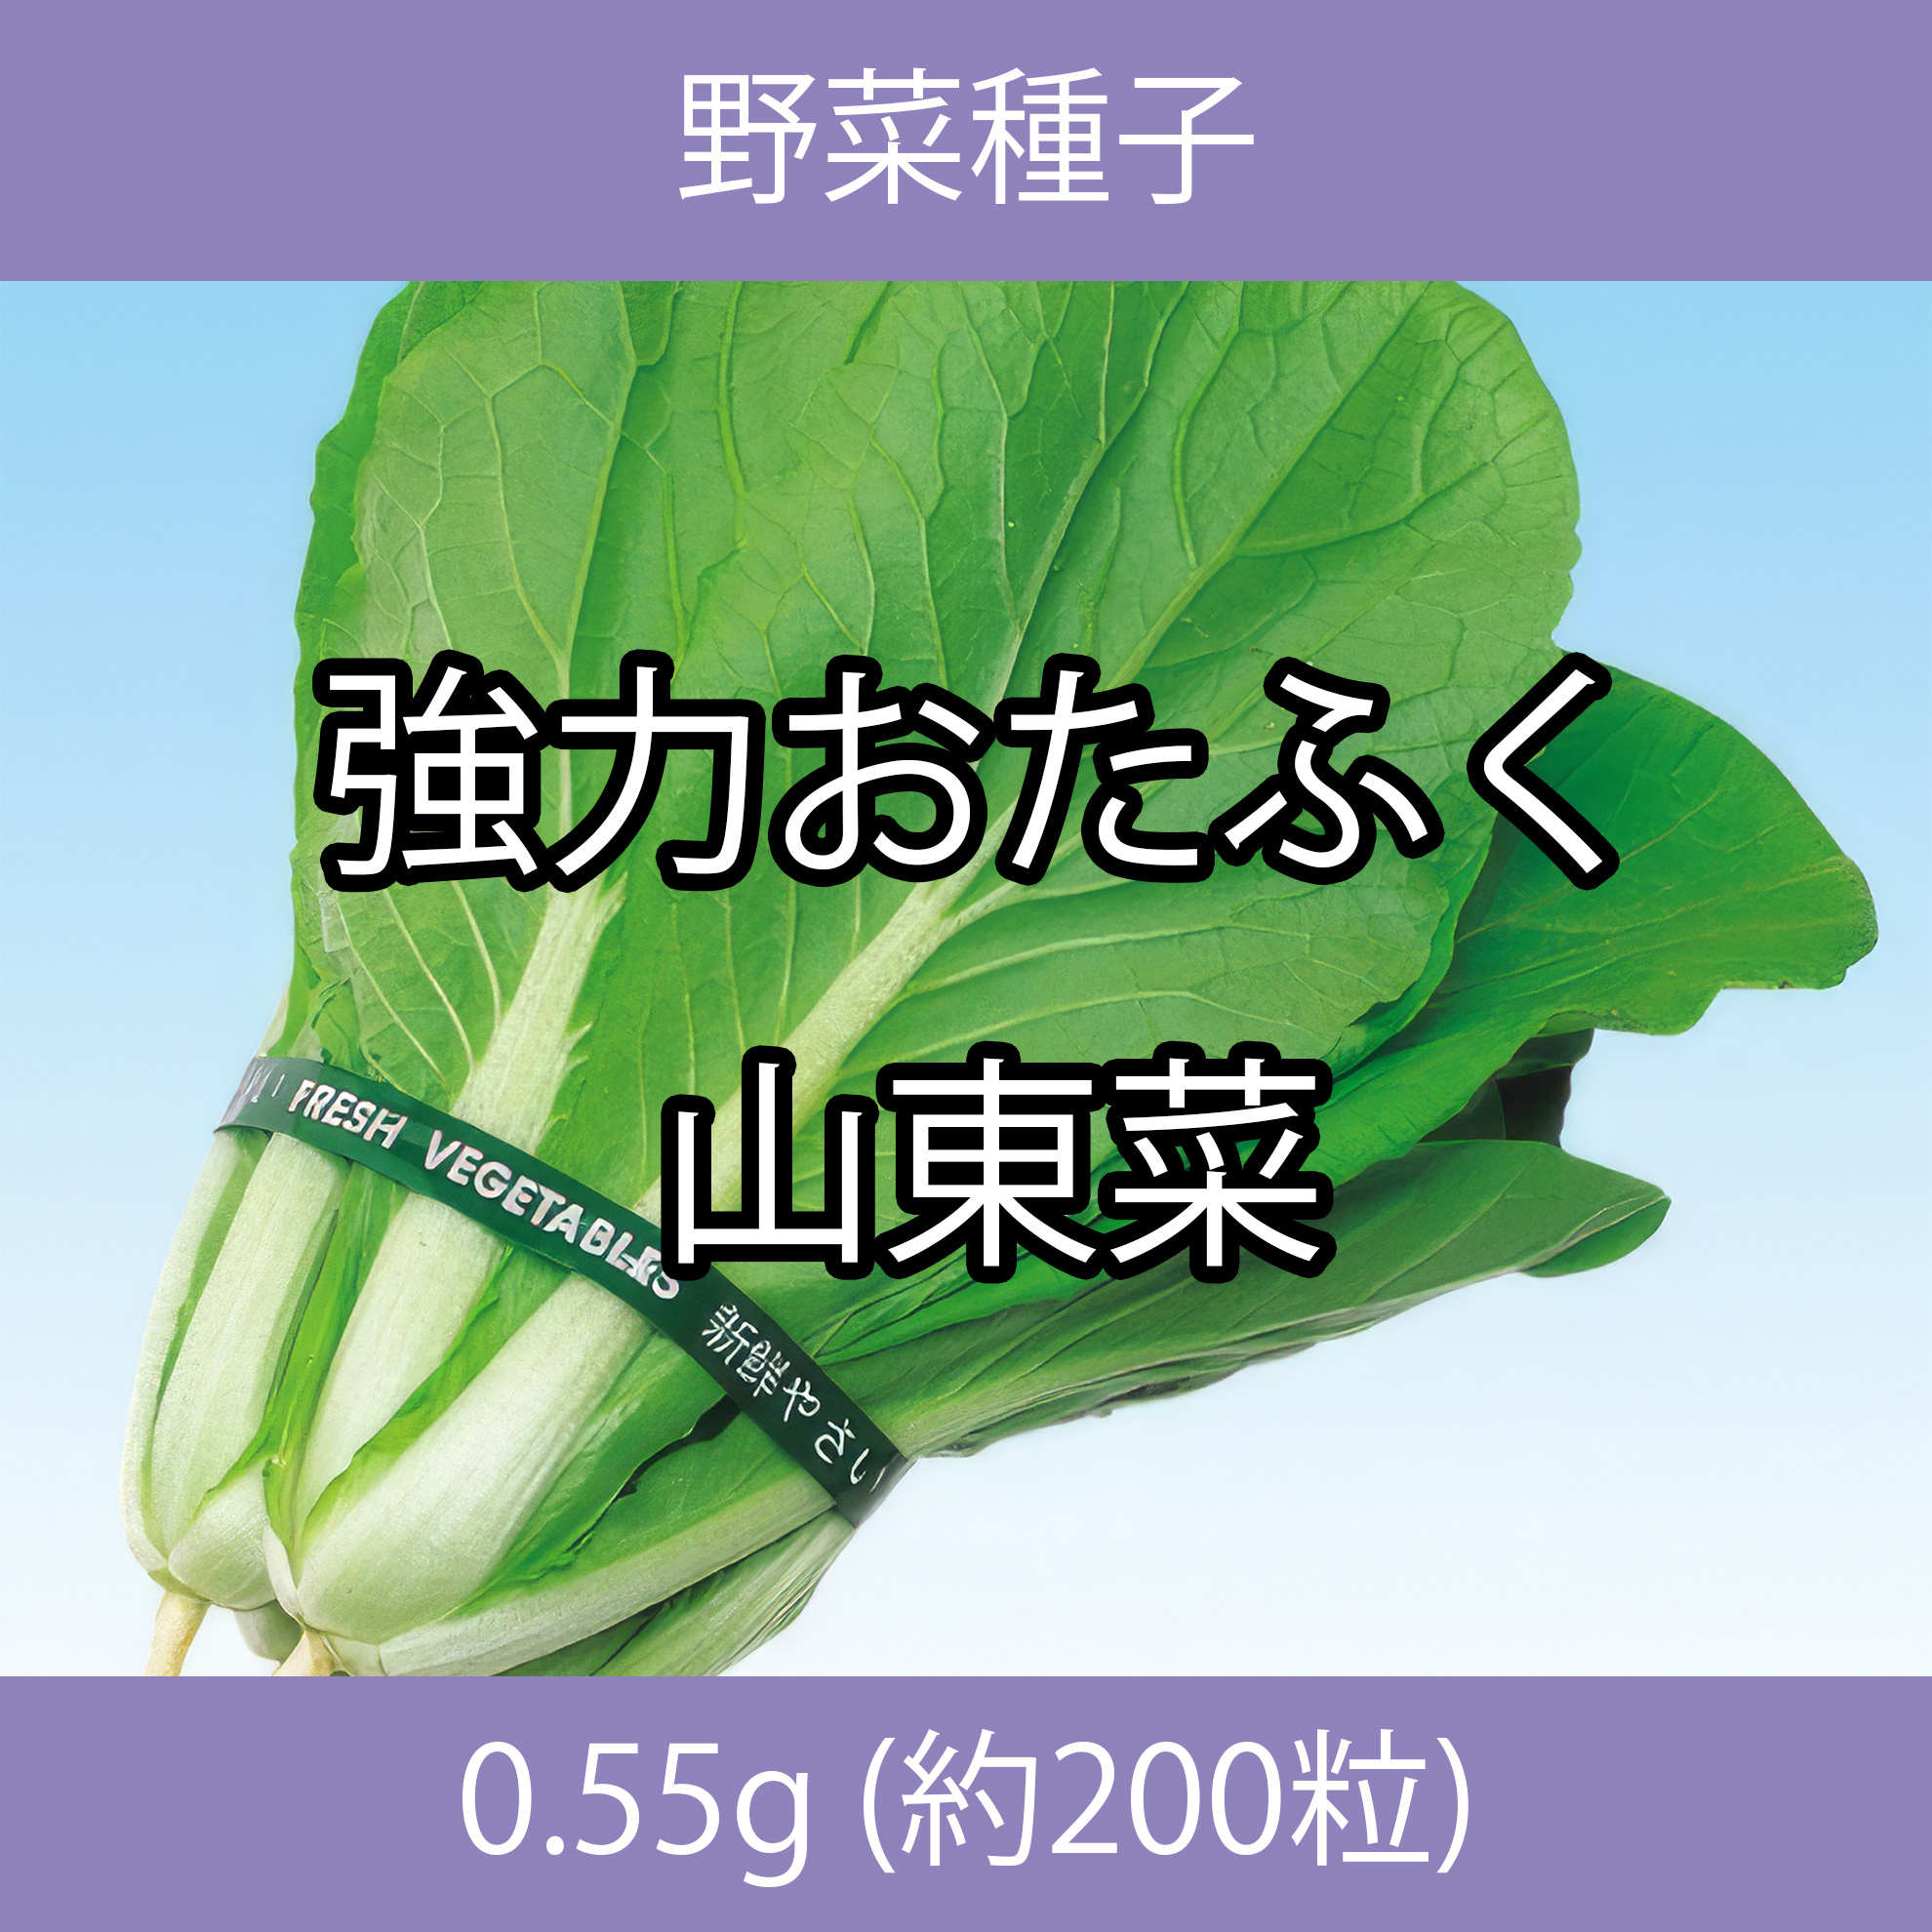 野菜種子 ECJ 強力おたふく山東菜 0.55g